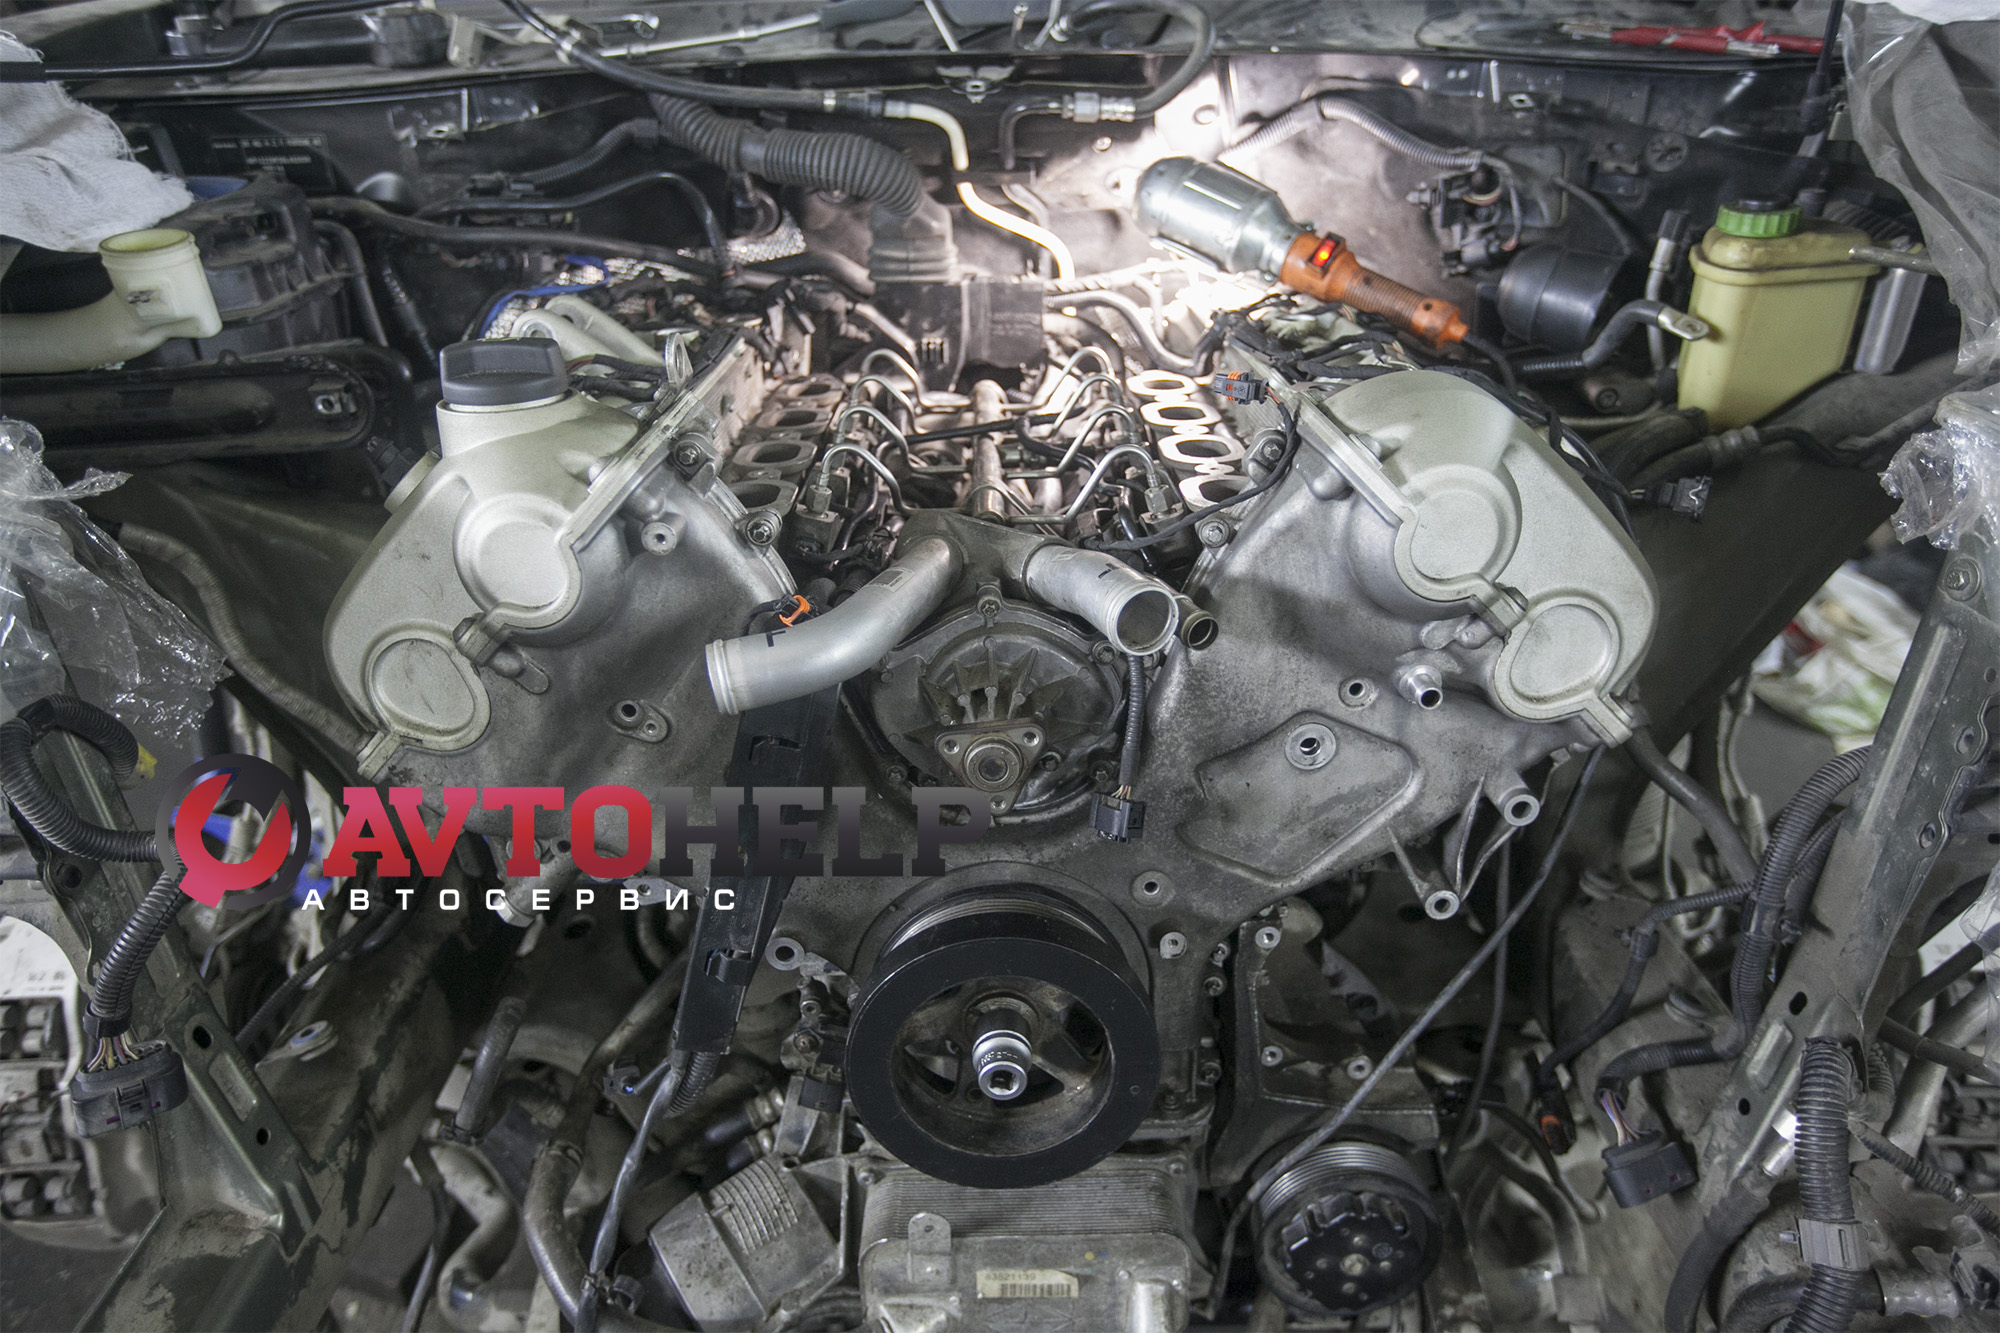 Капитальный ремонт двигателя Porsche Cayenne, капиталка порш каен, новосибирск